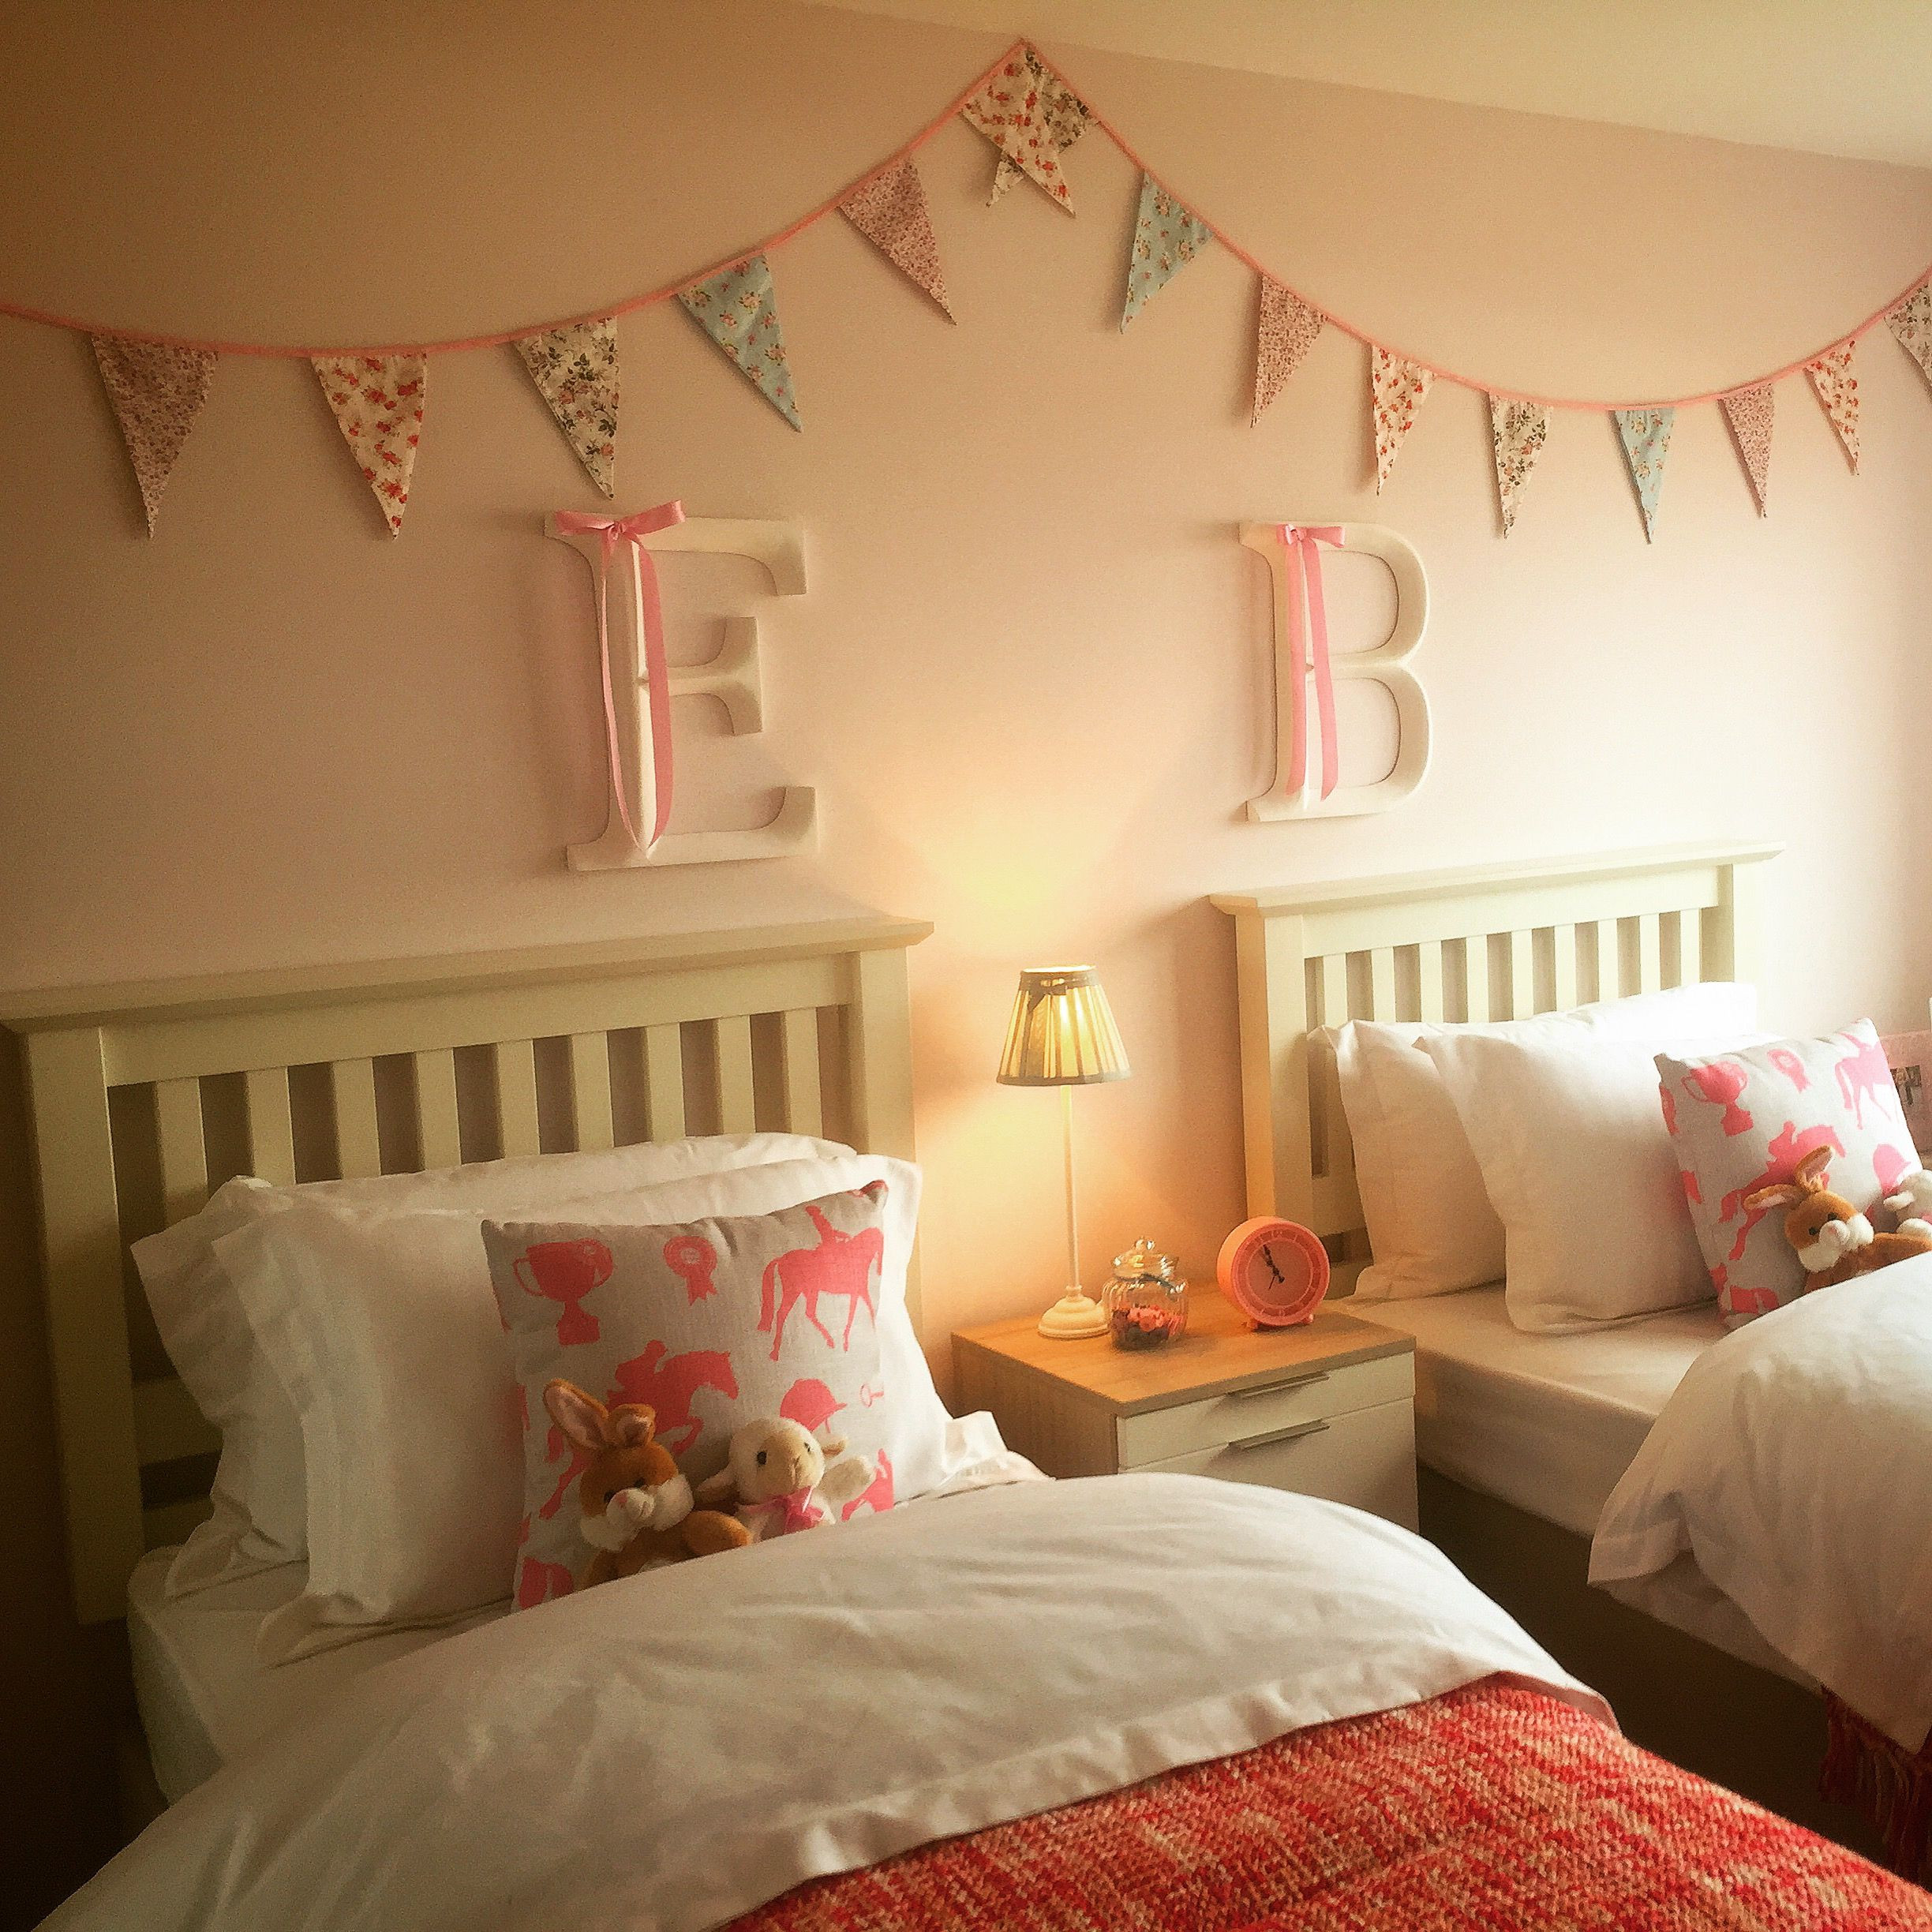 Twin Girl Bedroom Ideas
 The 25 best Twin room ideas on Pinterest